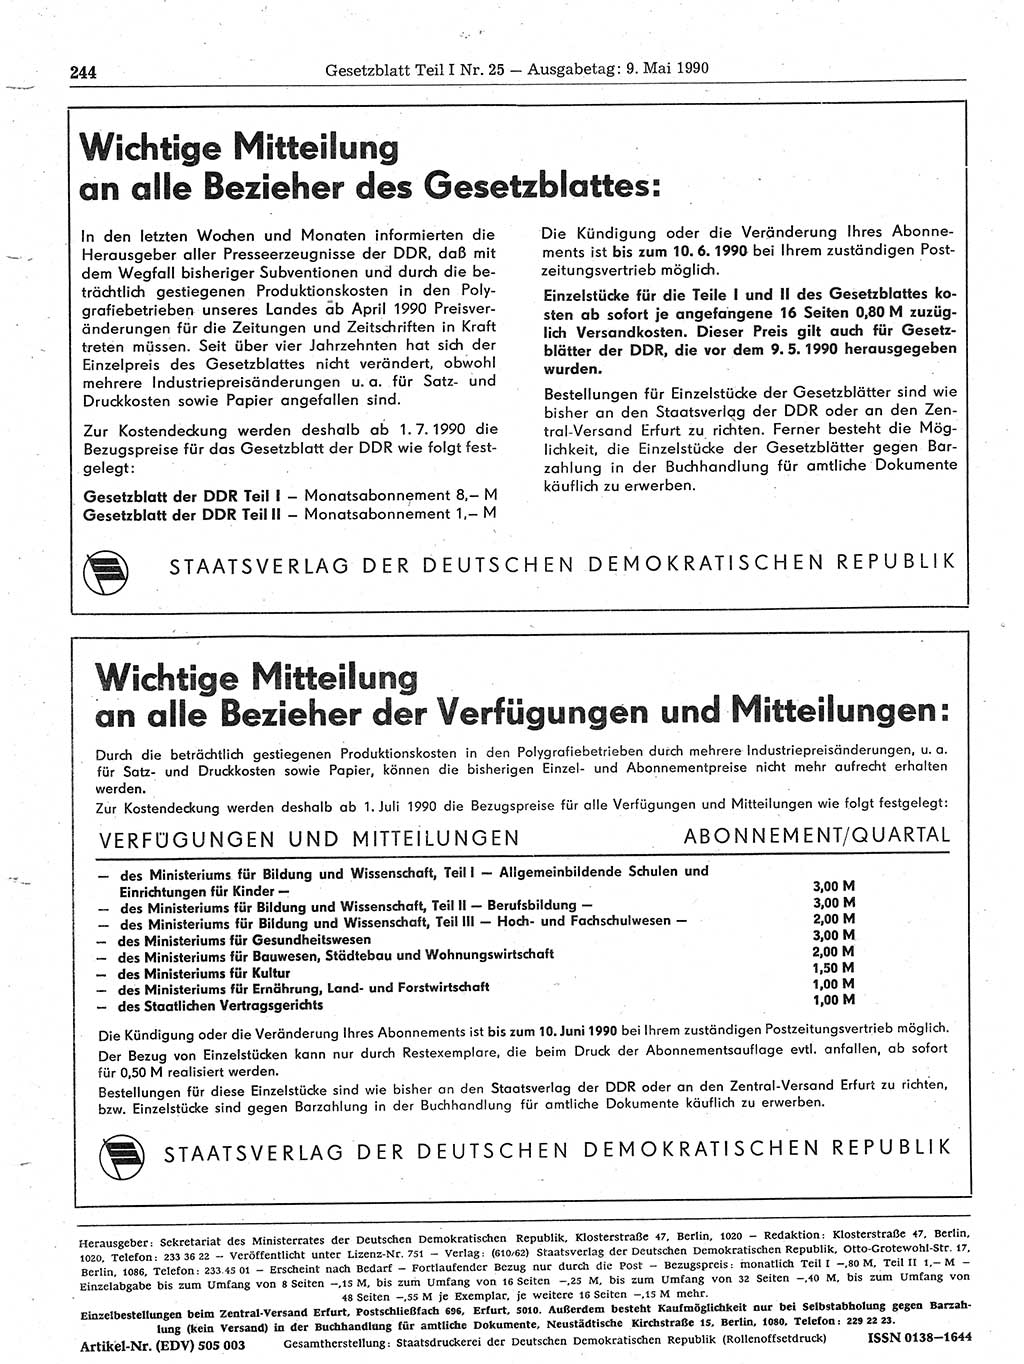 Gesetzblatt (GBl.) der Deutschen Demokratischen Republik (DDR) Teil Ⅰ 1990, Seite 244 (GBl. DDR Ⅰ 1990, S. 244)